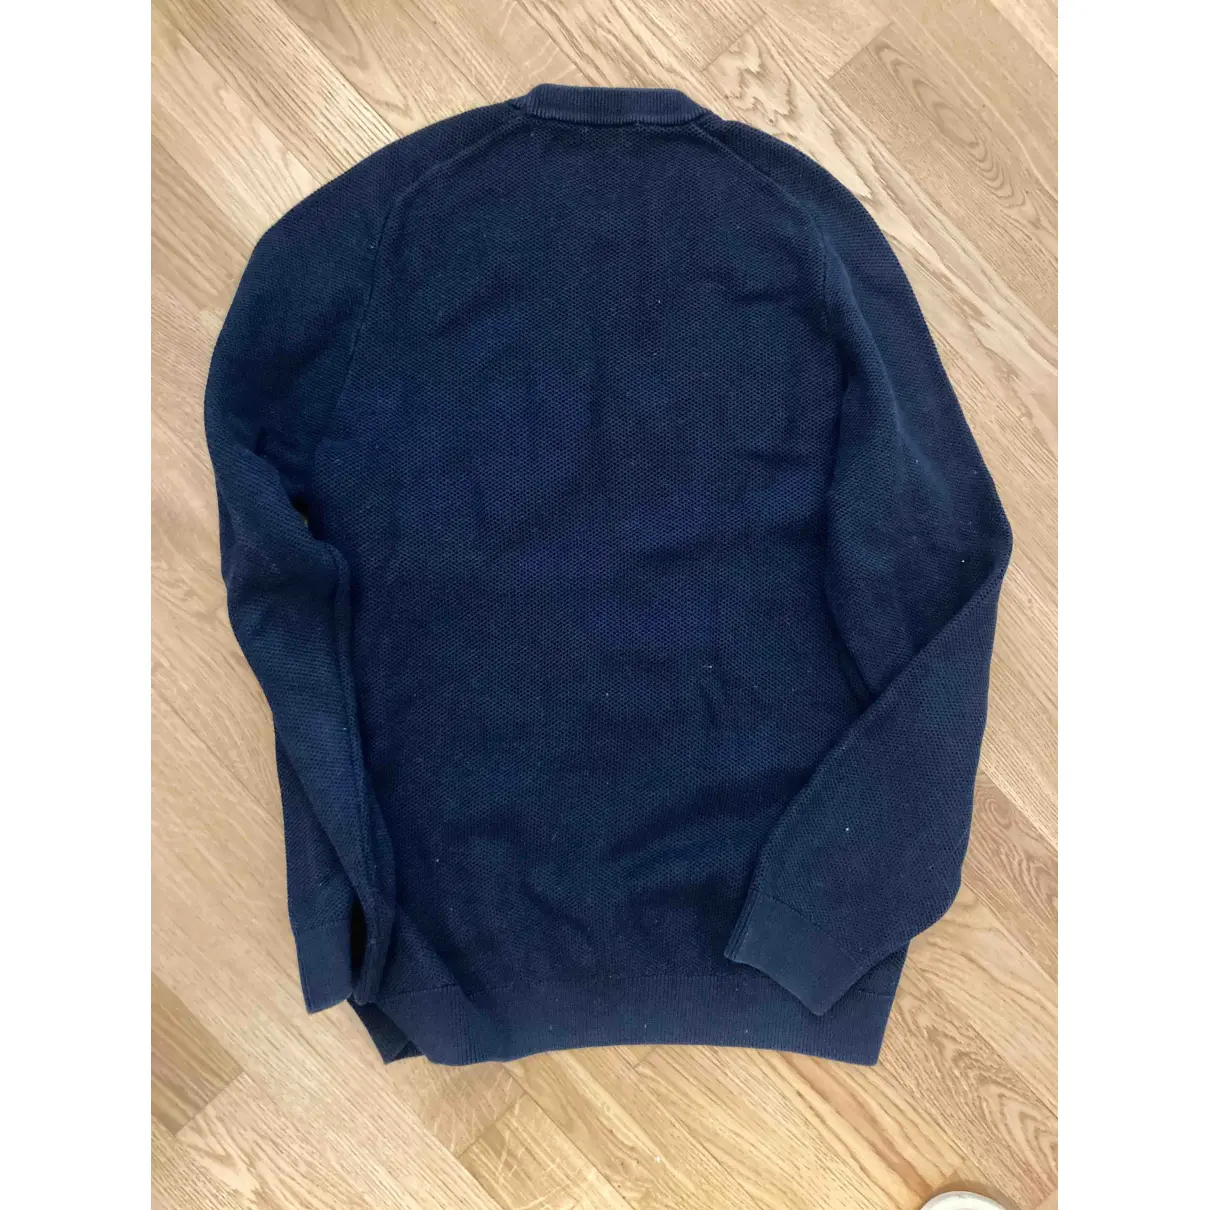 Buy Cos Blue Cotton Knitwear & Sweatshirt online